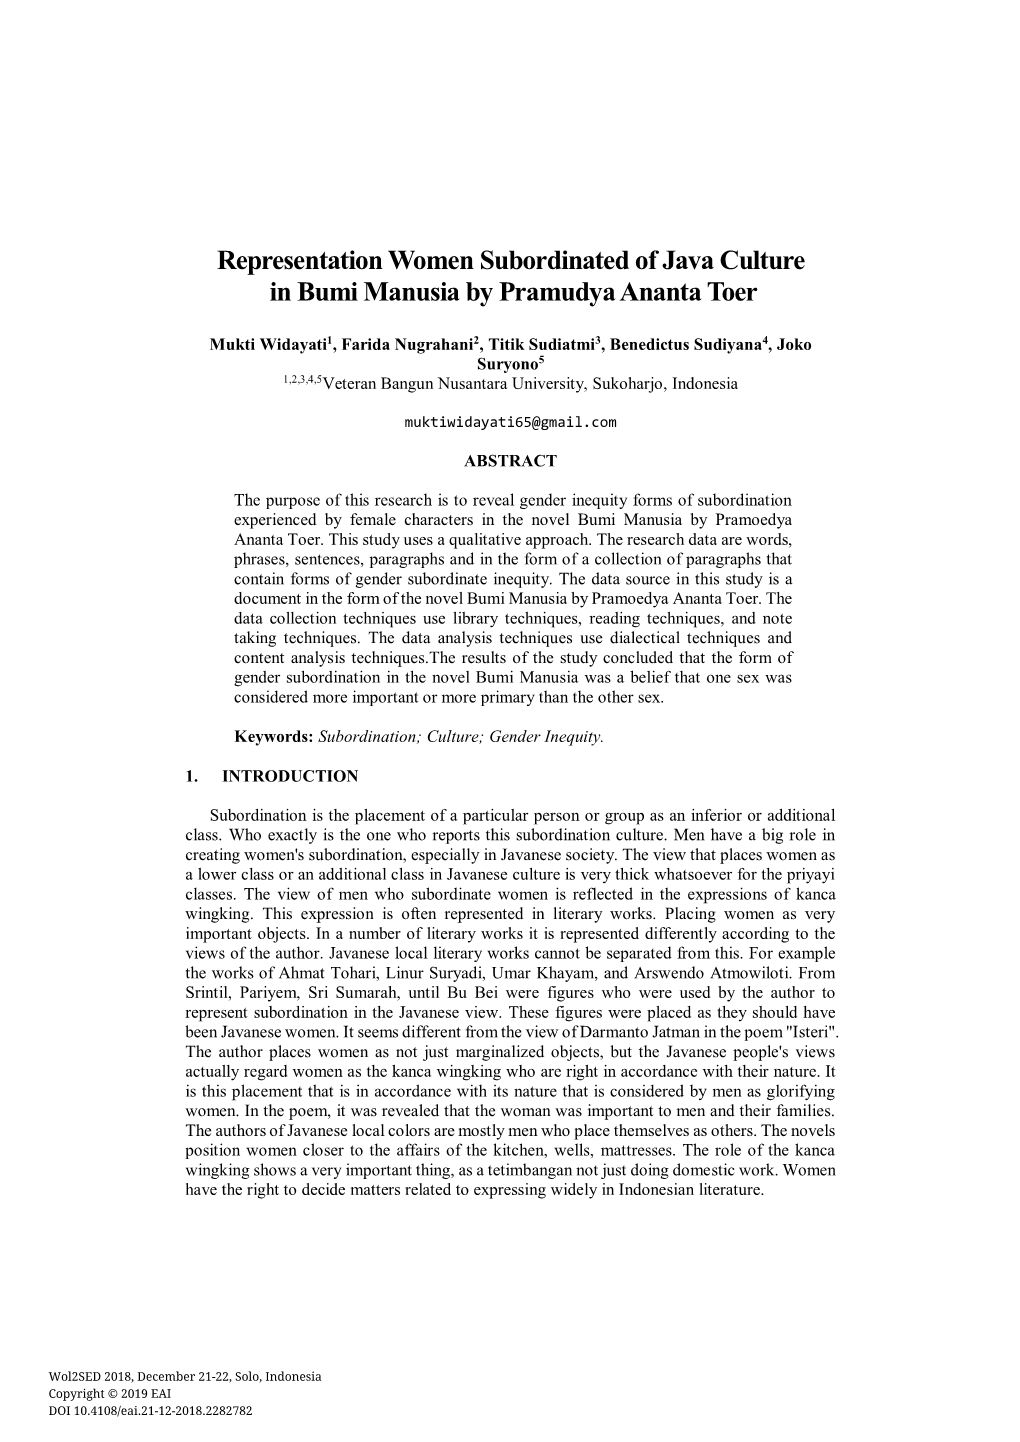 Representation Women Subordinated of Java Culture in Bumi Manusia by Pramudya Ananta Toer